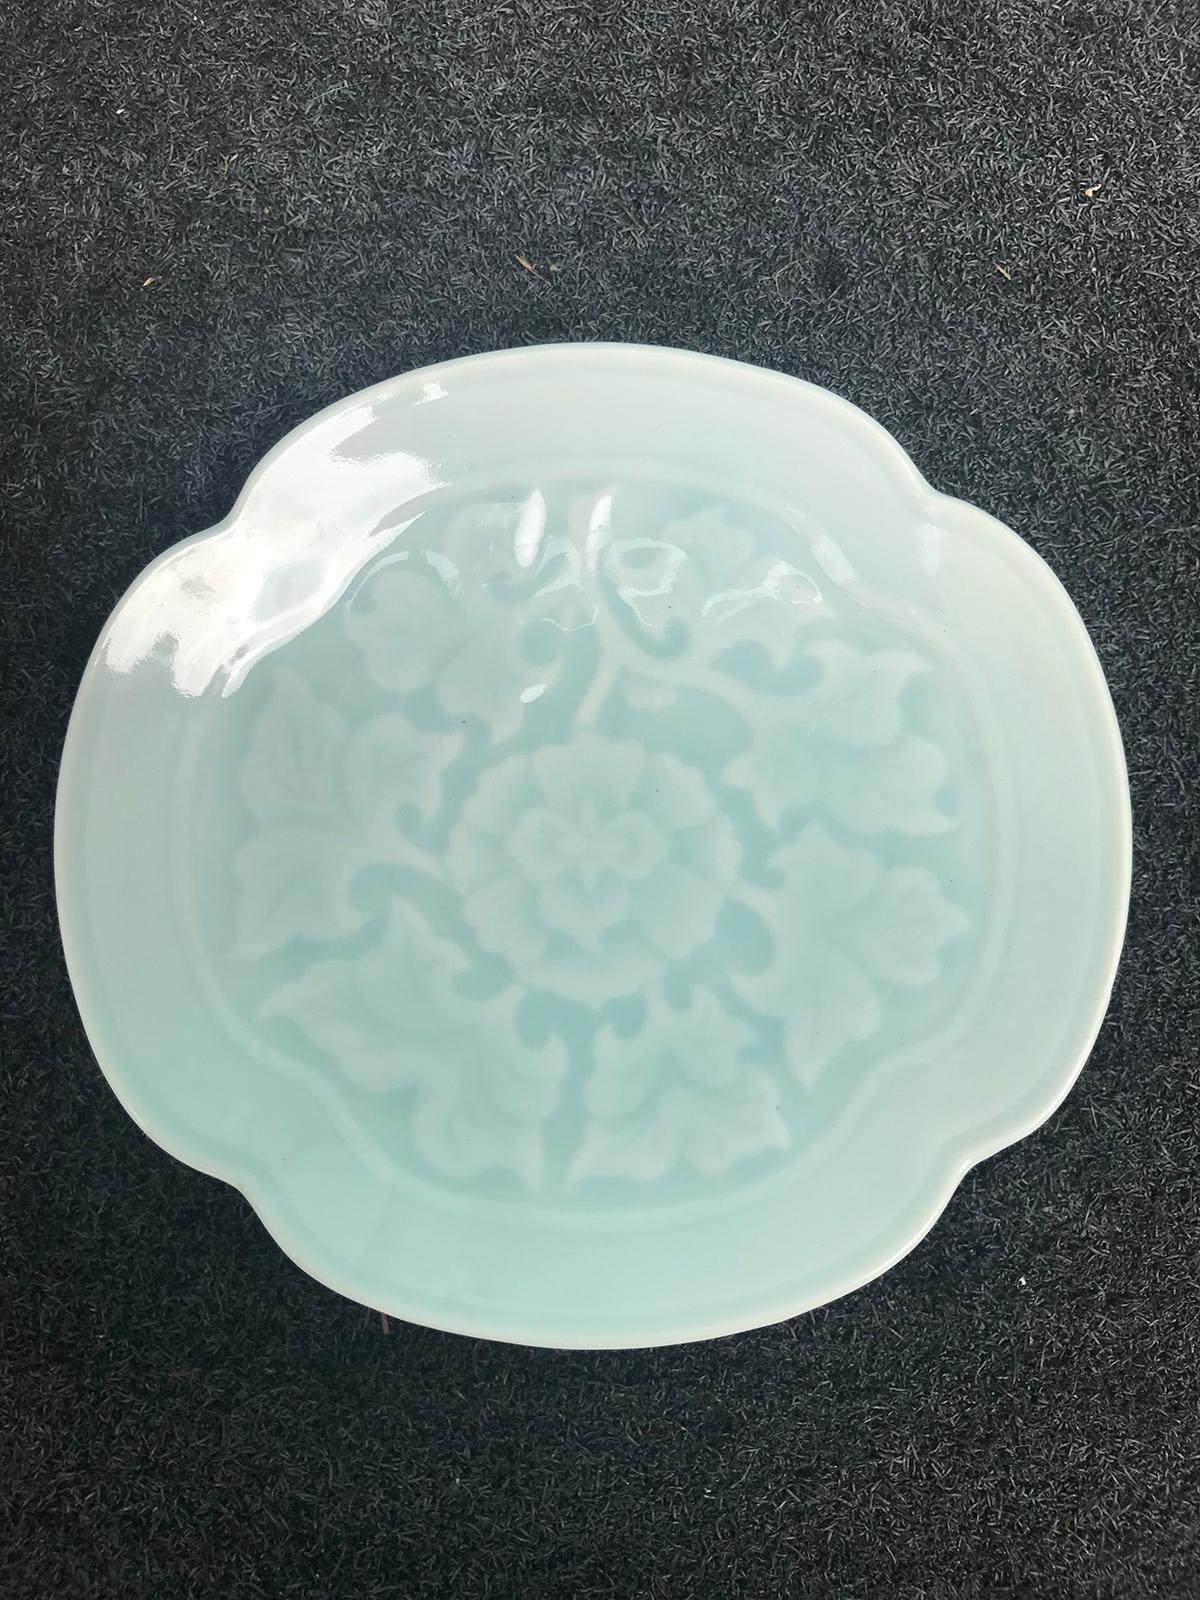 20th century Japanese Quatrefoil shape celadon porcelain plate with 